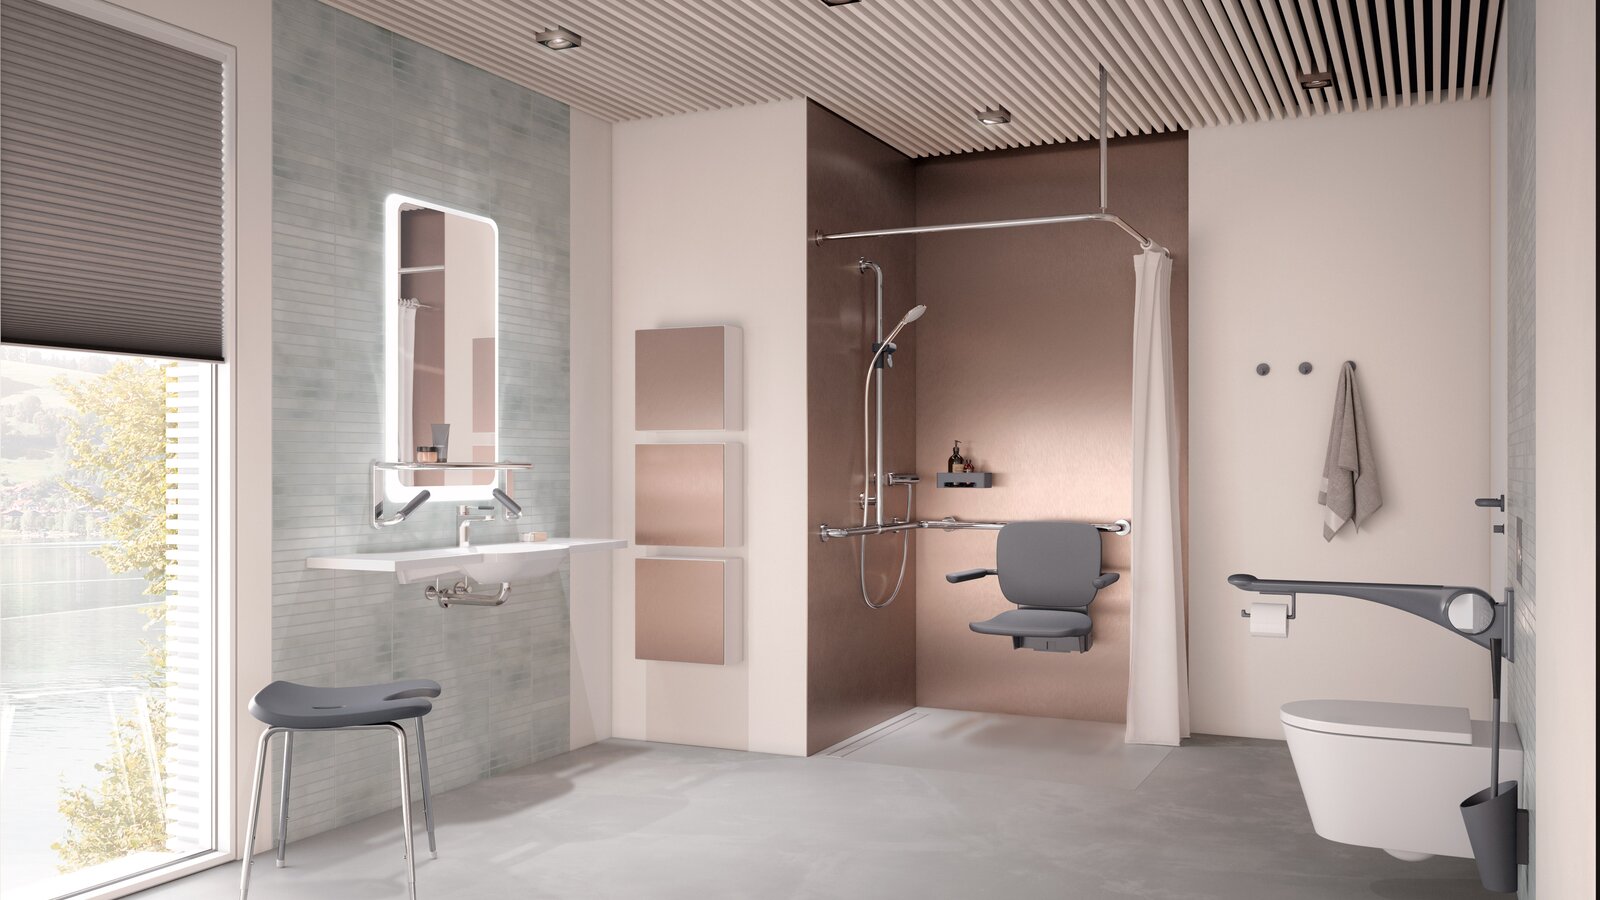 Barrierefreies Pflegebad mit Waschplatz, Duschbereich und WC ausgestattet mit HEWI LiftSystem in Anthrazit